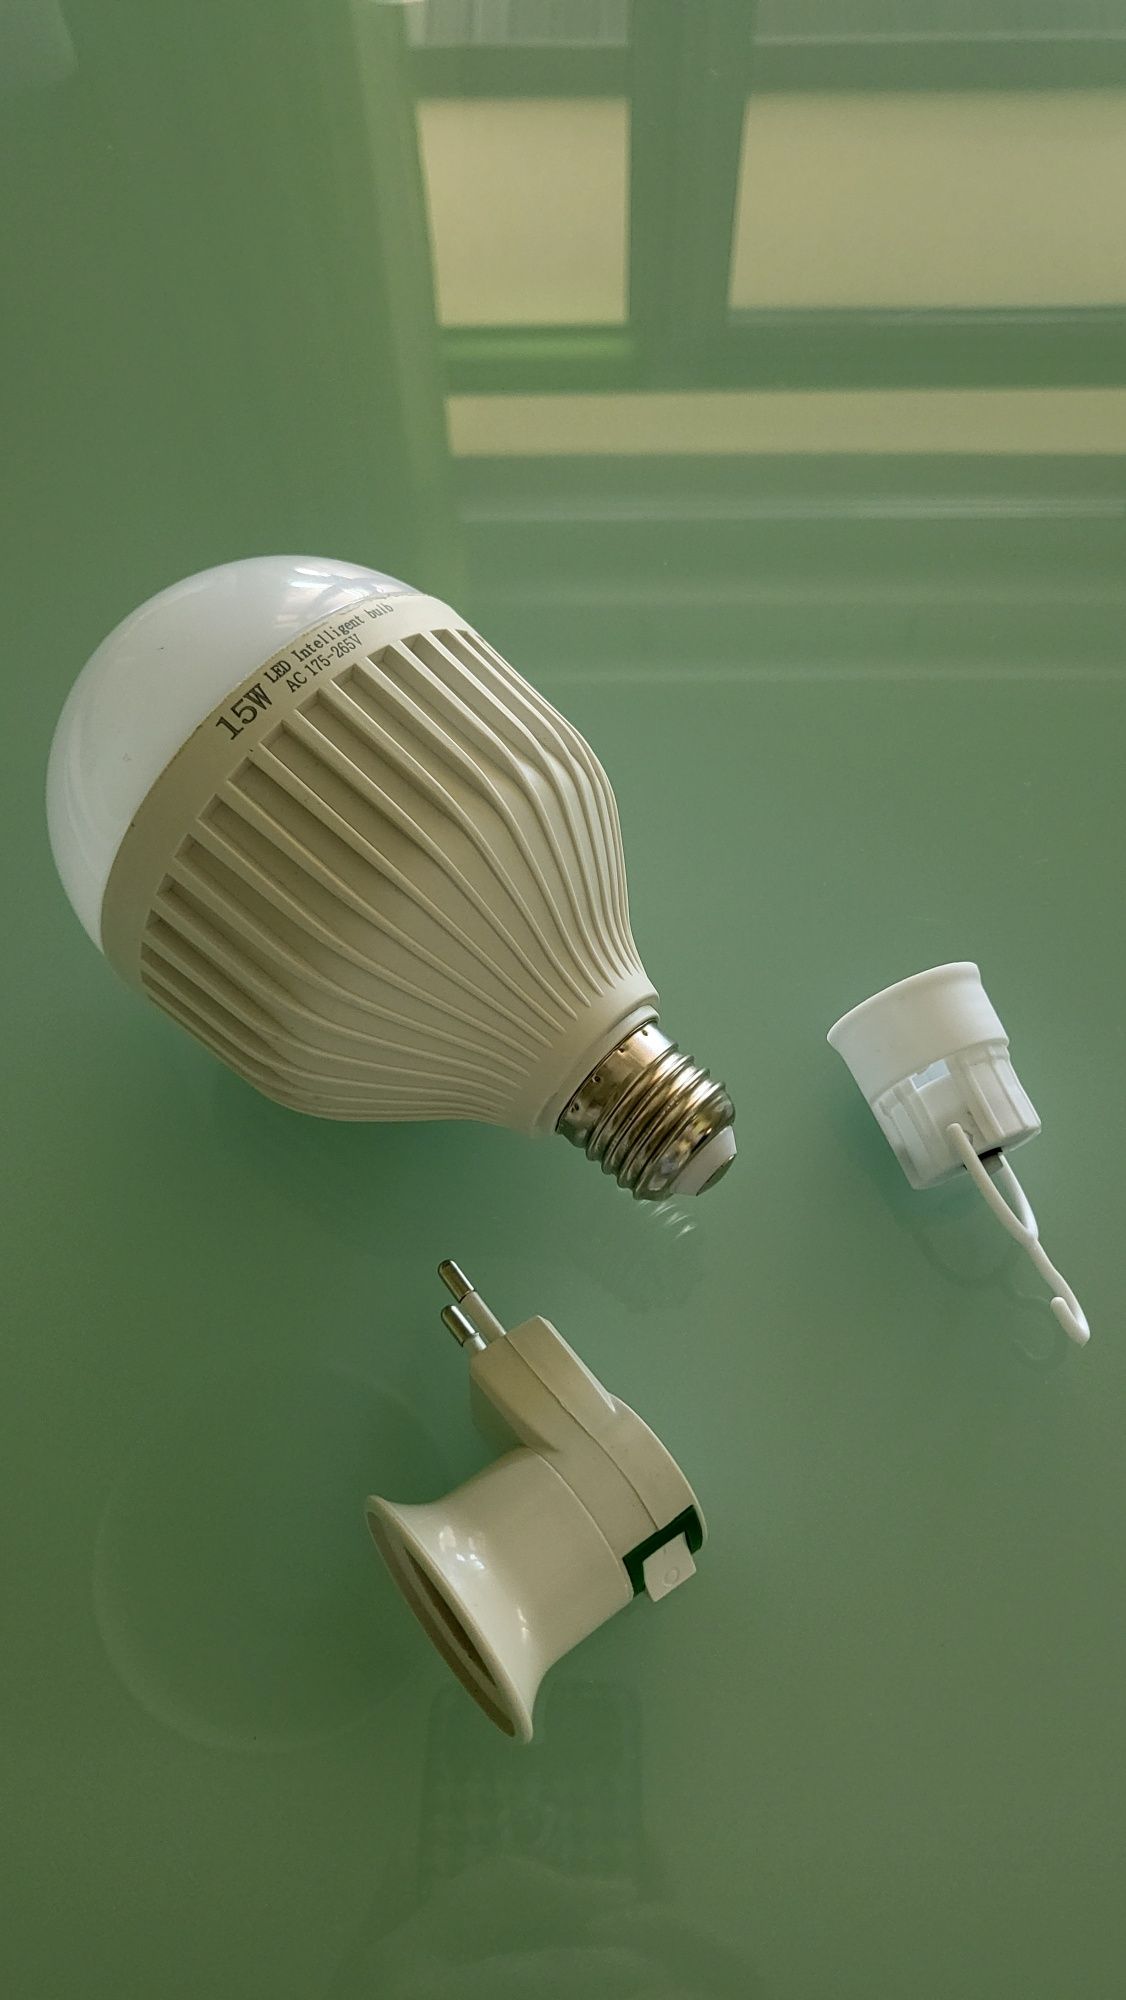 Аккумуляторная лампочка до 4 ч, цоколь Е27, аварийная лампа, LED, лед